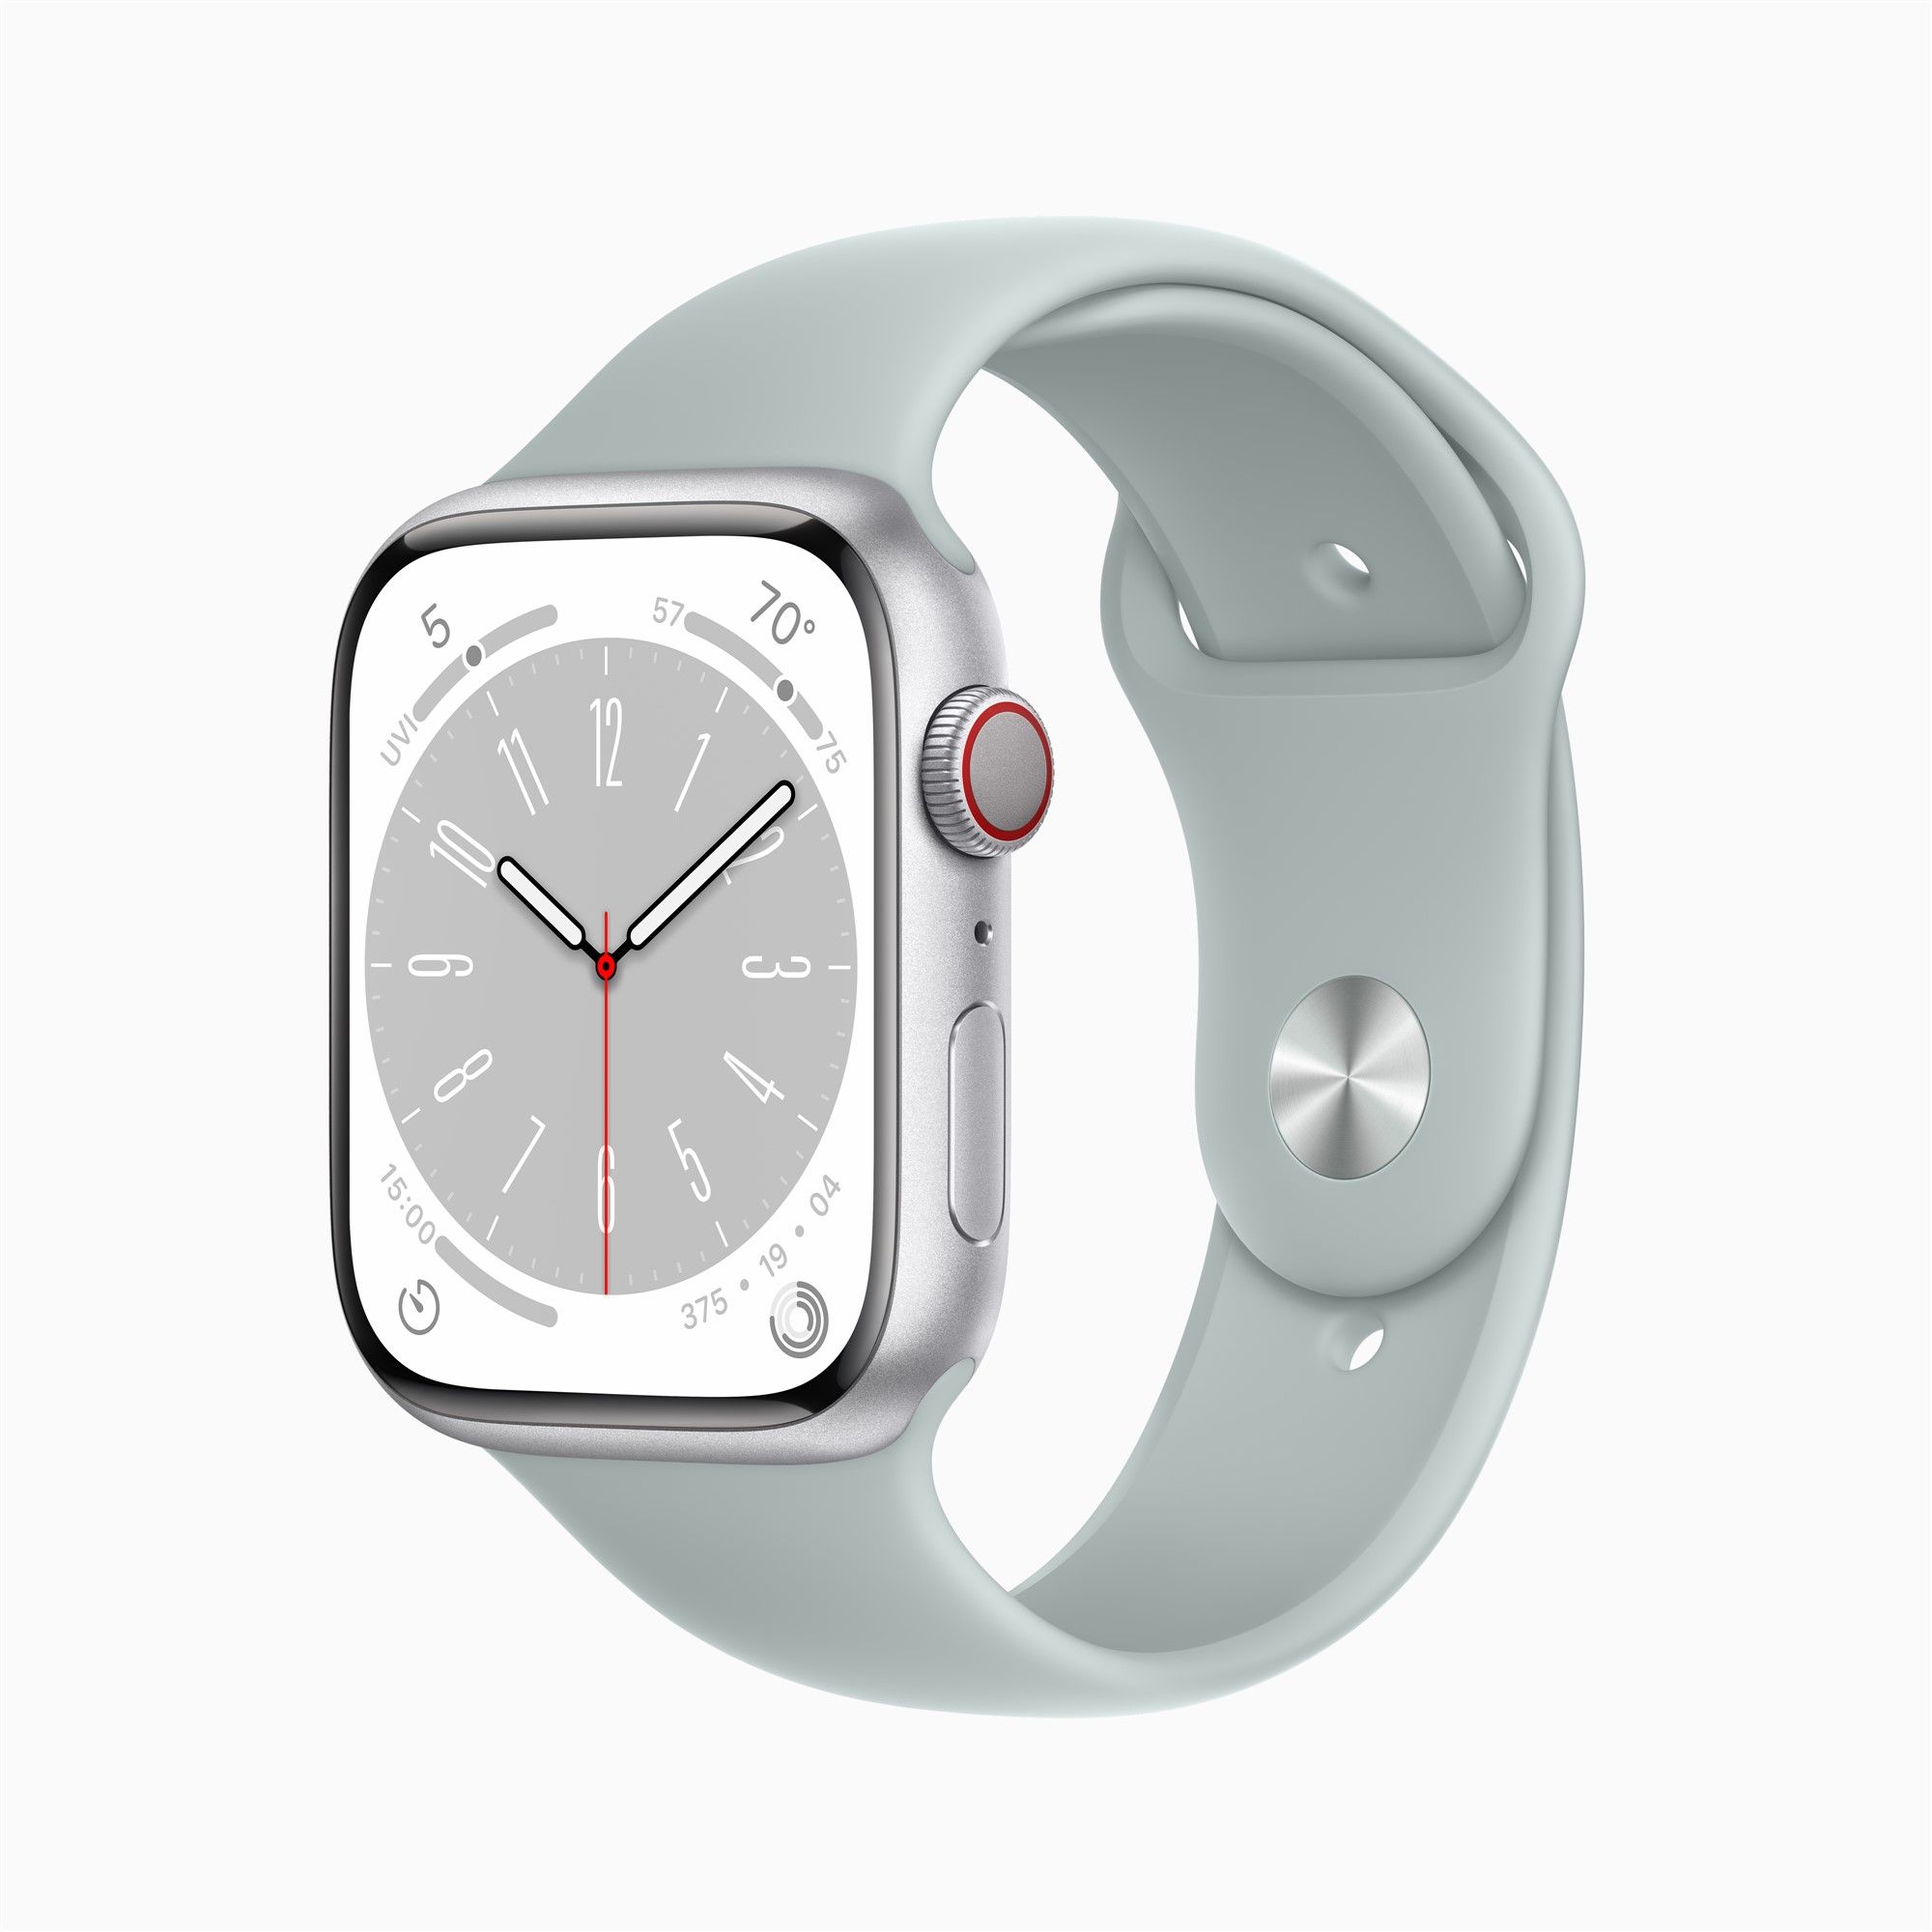 Apple Watch erscheint in Ultra-Version, 2. Generation Airpods Pro in